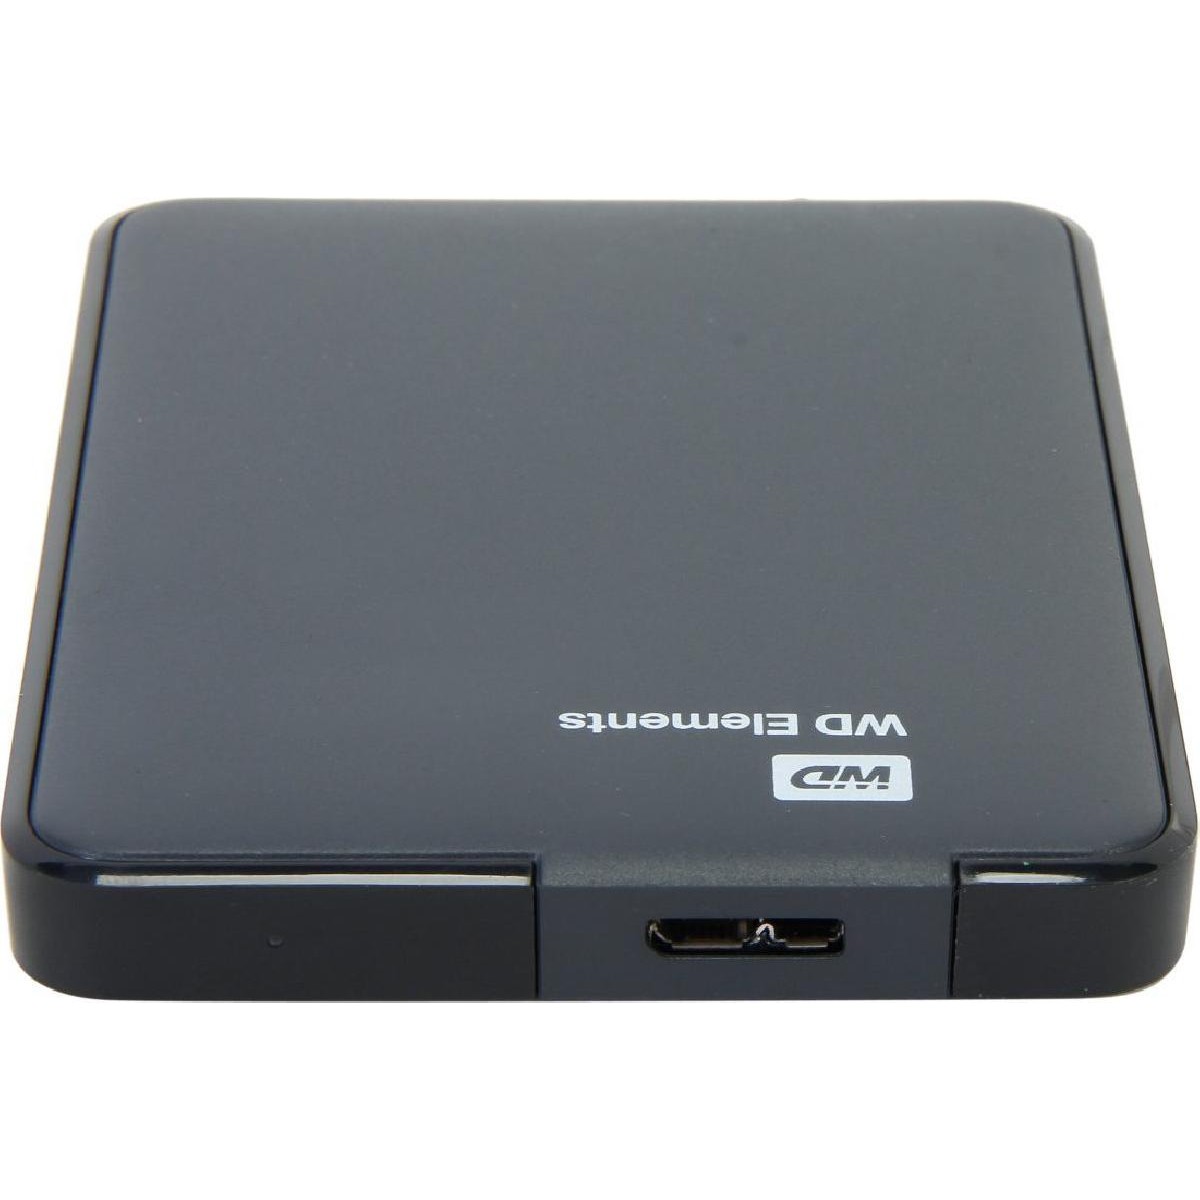 Western Digital Elements Portable USB 3.0 Εξωτερικός HDD 1TB 2.5